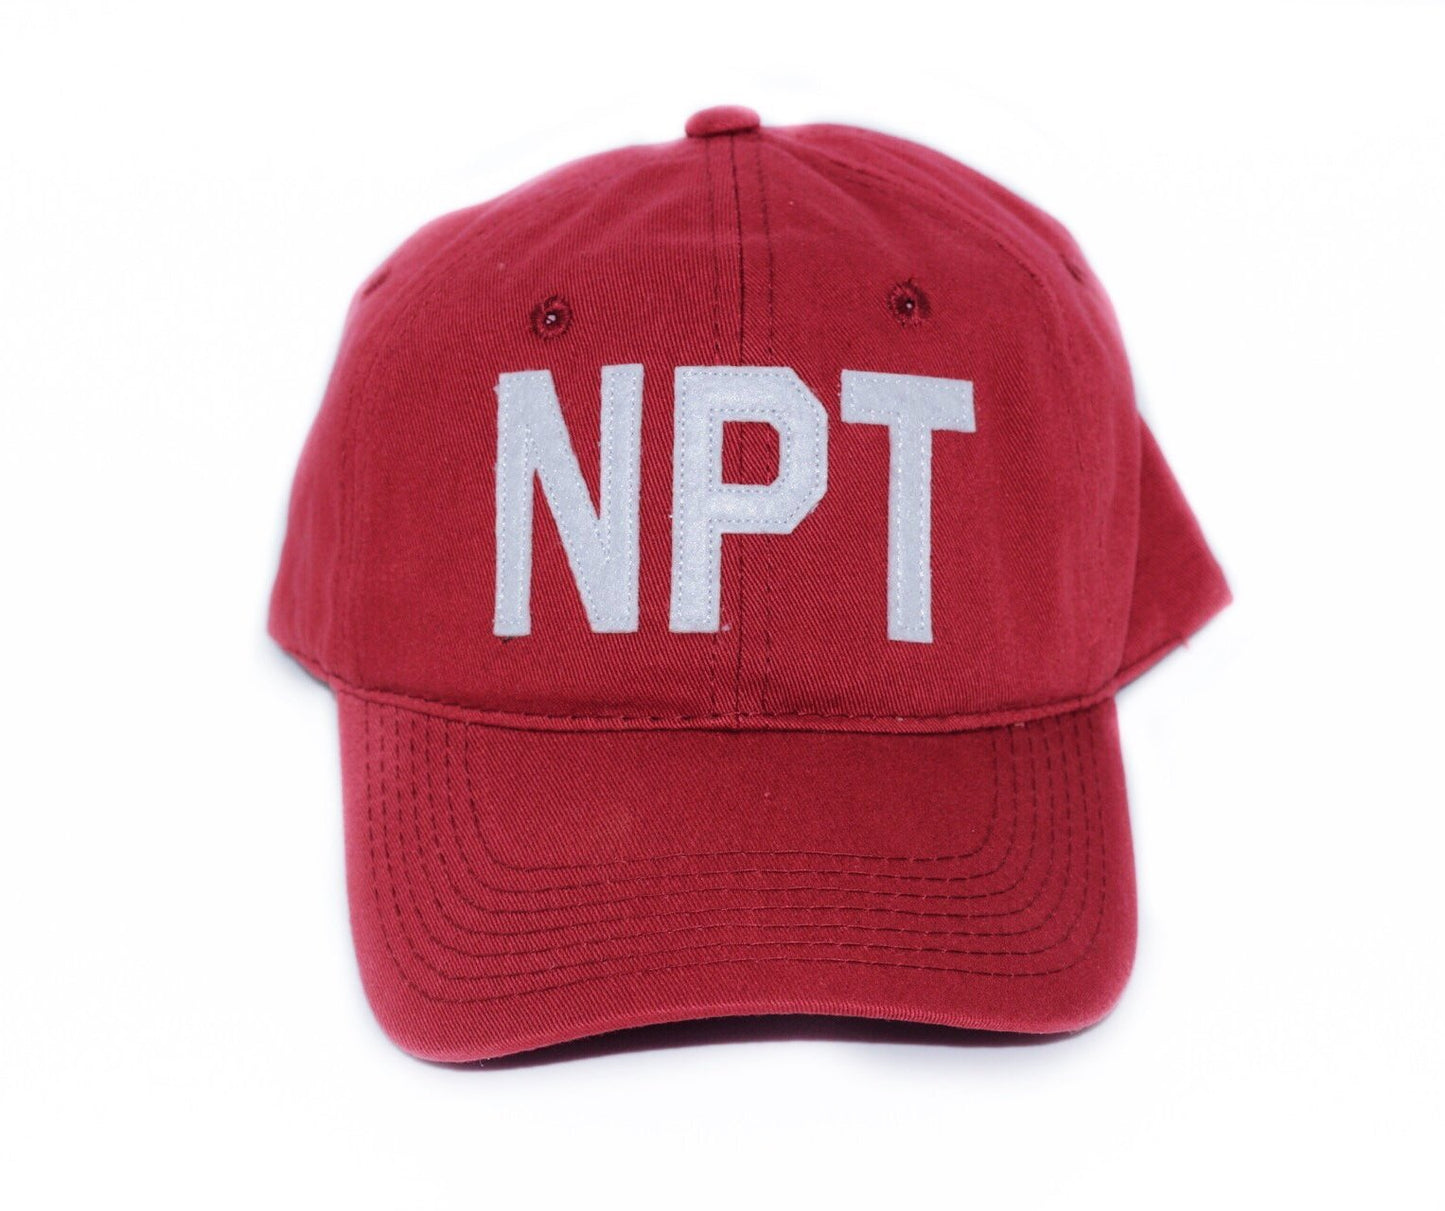 NPT - Newport, RI Hat